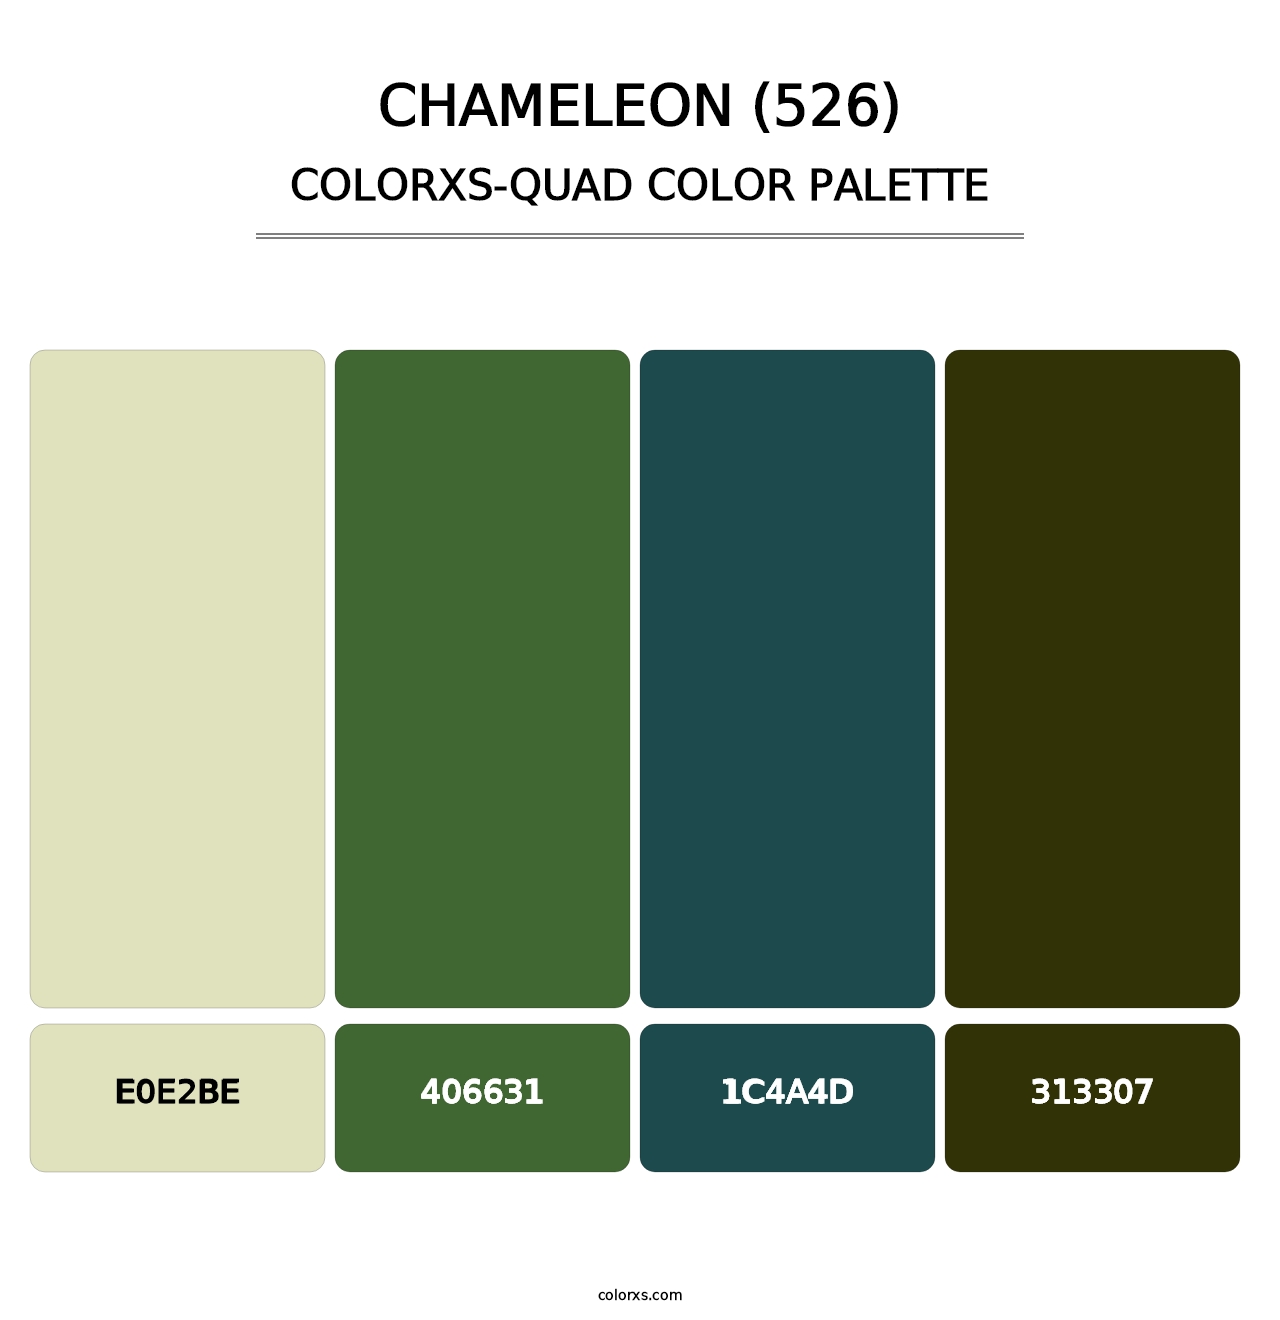 Chameleon (526) - Colorxs Quad Palette